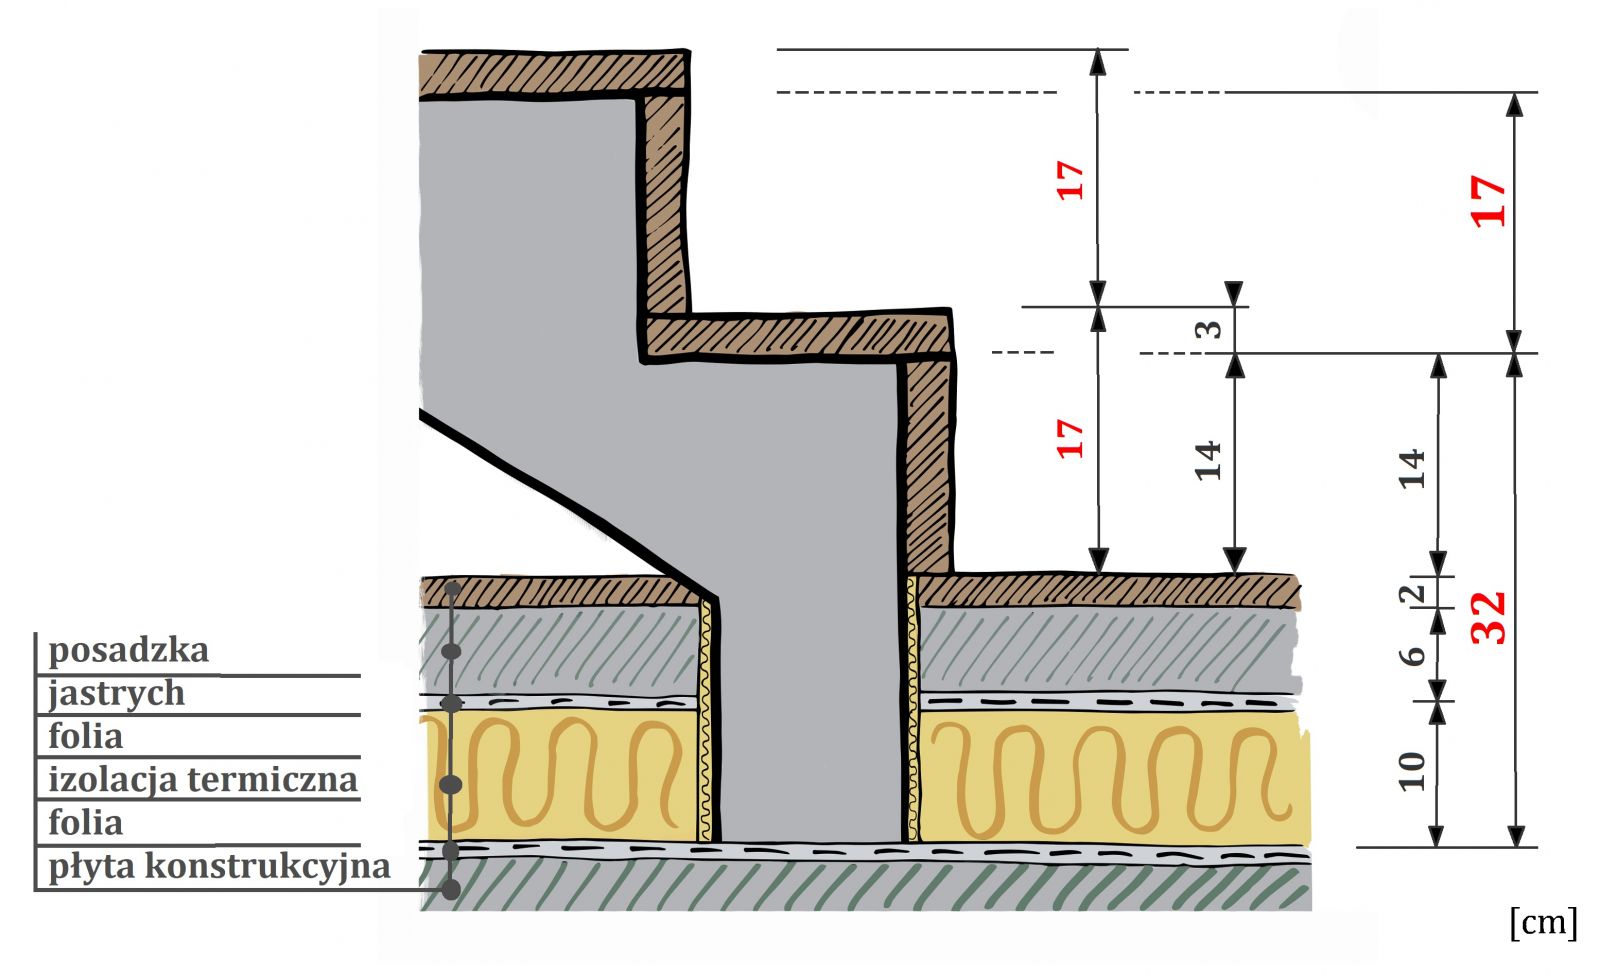 Wyznaczanie wysokości pierwszego stopnia schodów - przykładowy schemat (rys. Eryka Rakoczy)